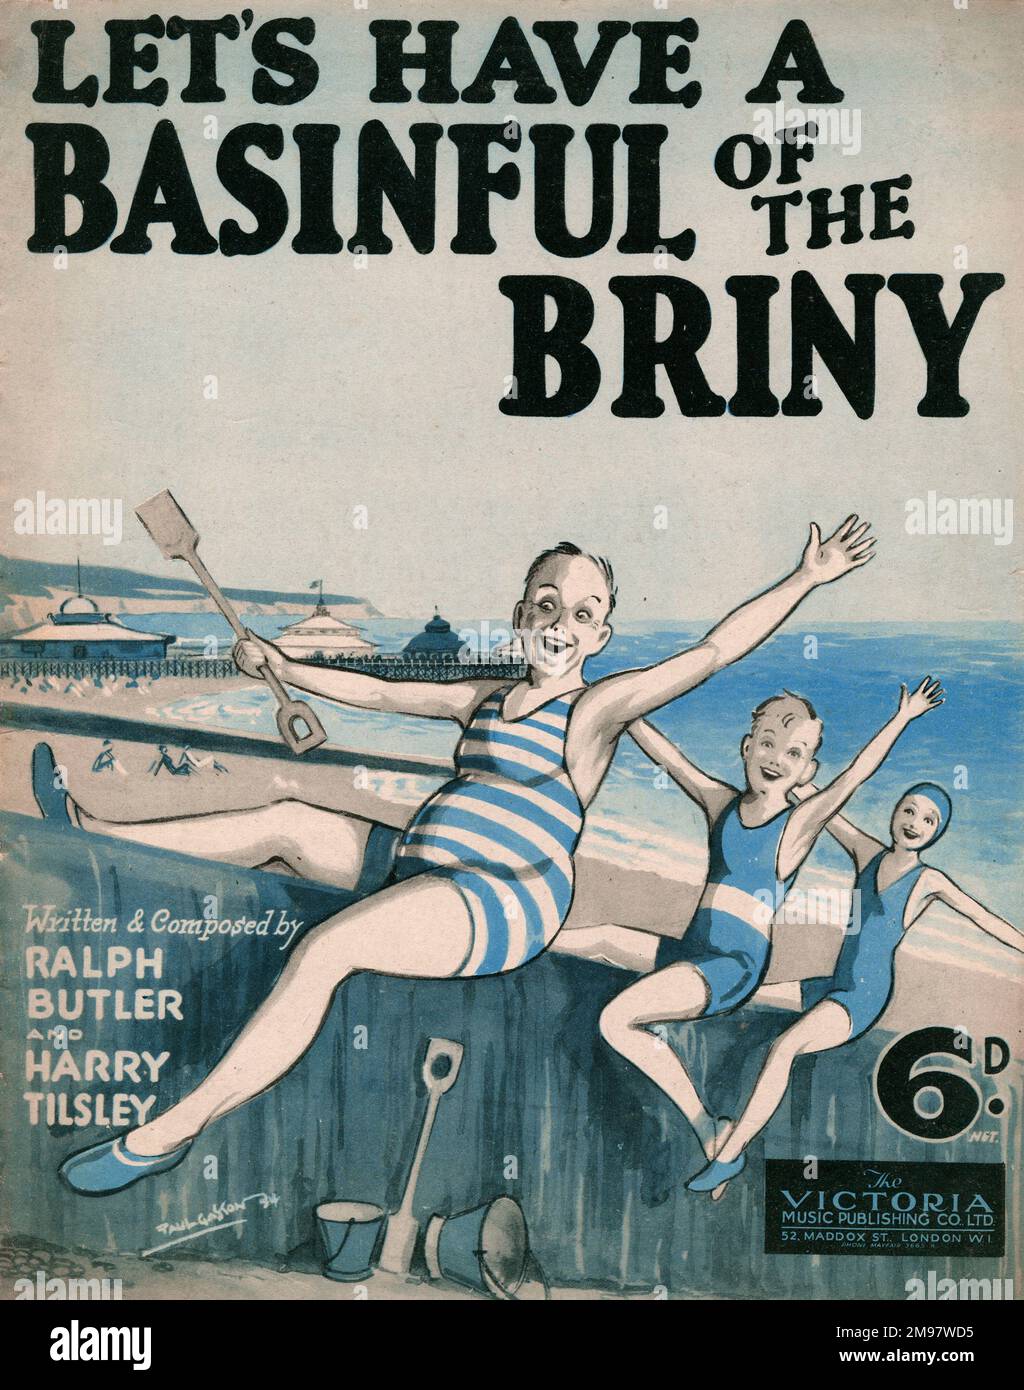 Couverture musicale, nous avons Une Basinful de la briny, chanson de Ralph Butler et Harry Tilsley. Montrer à une famille de trois personnes s'amuser sur la plage. Banque D'Images